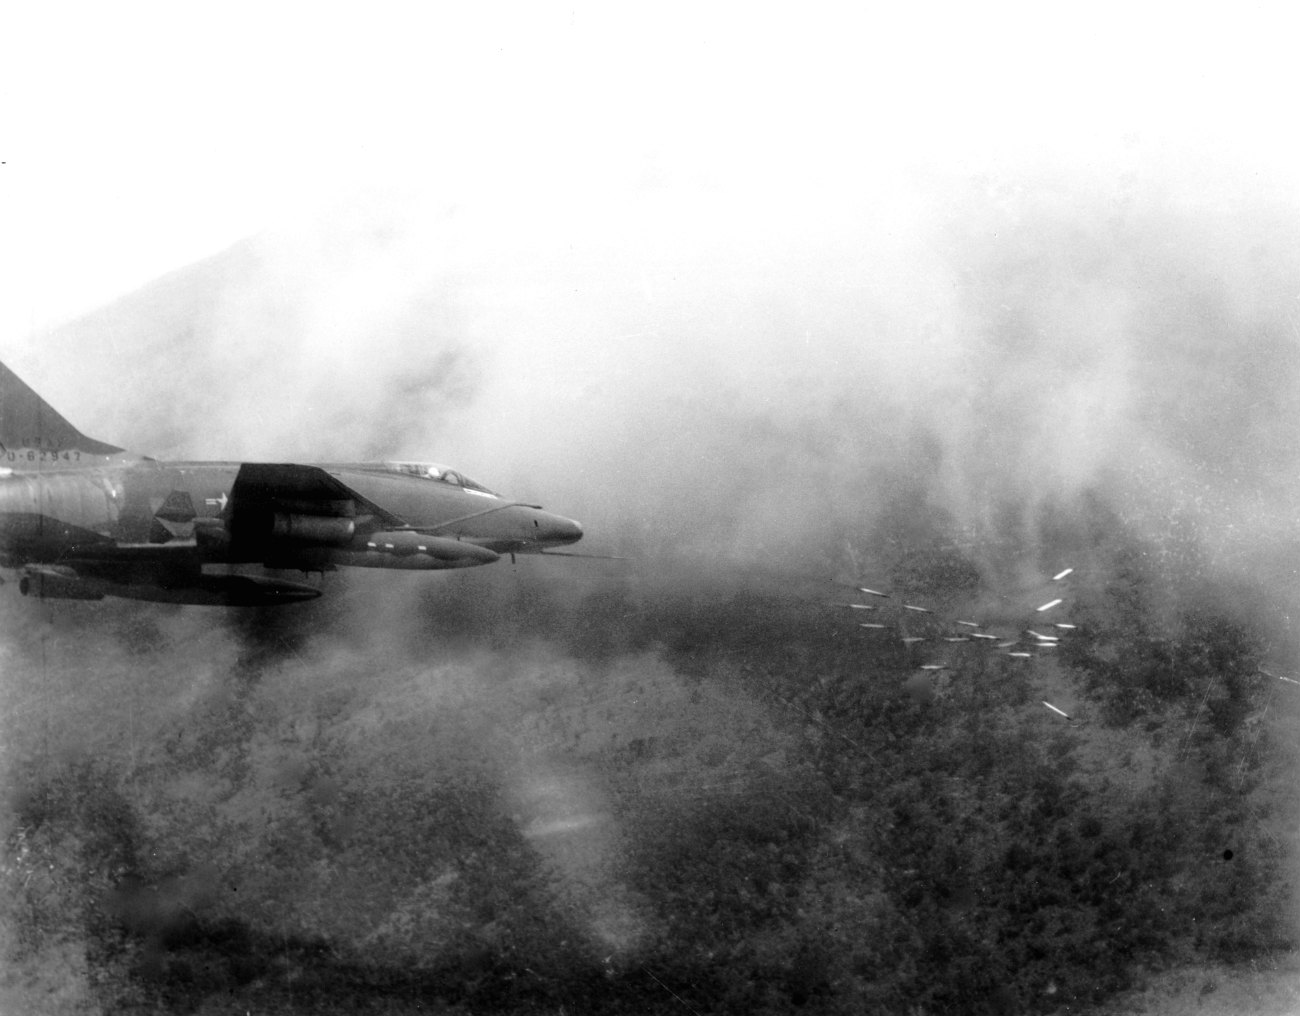 F-100 Super Sabre Firing